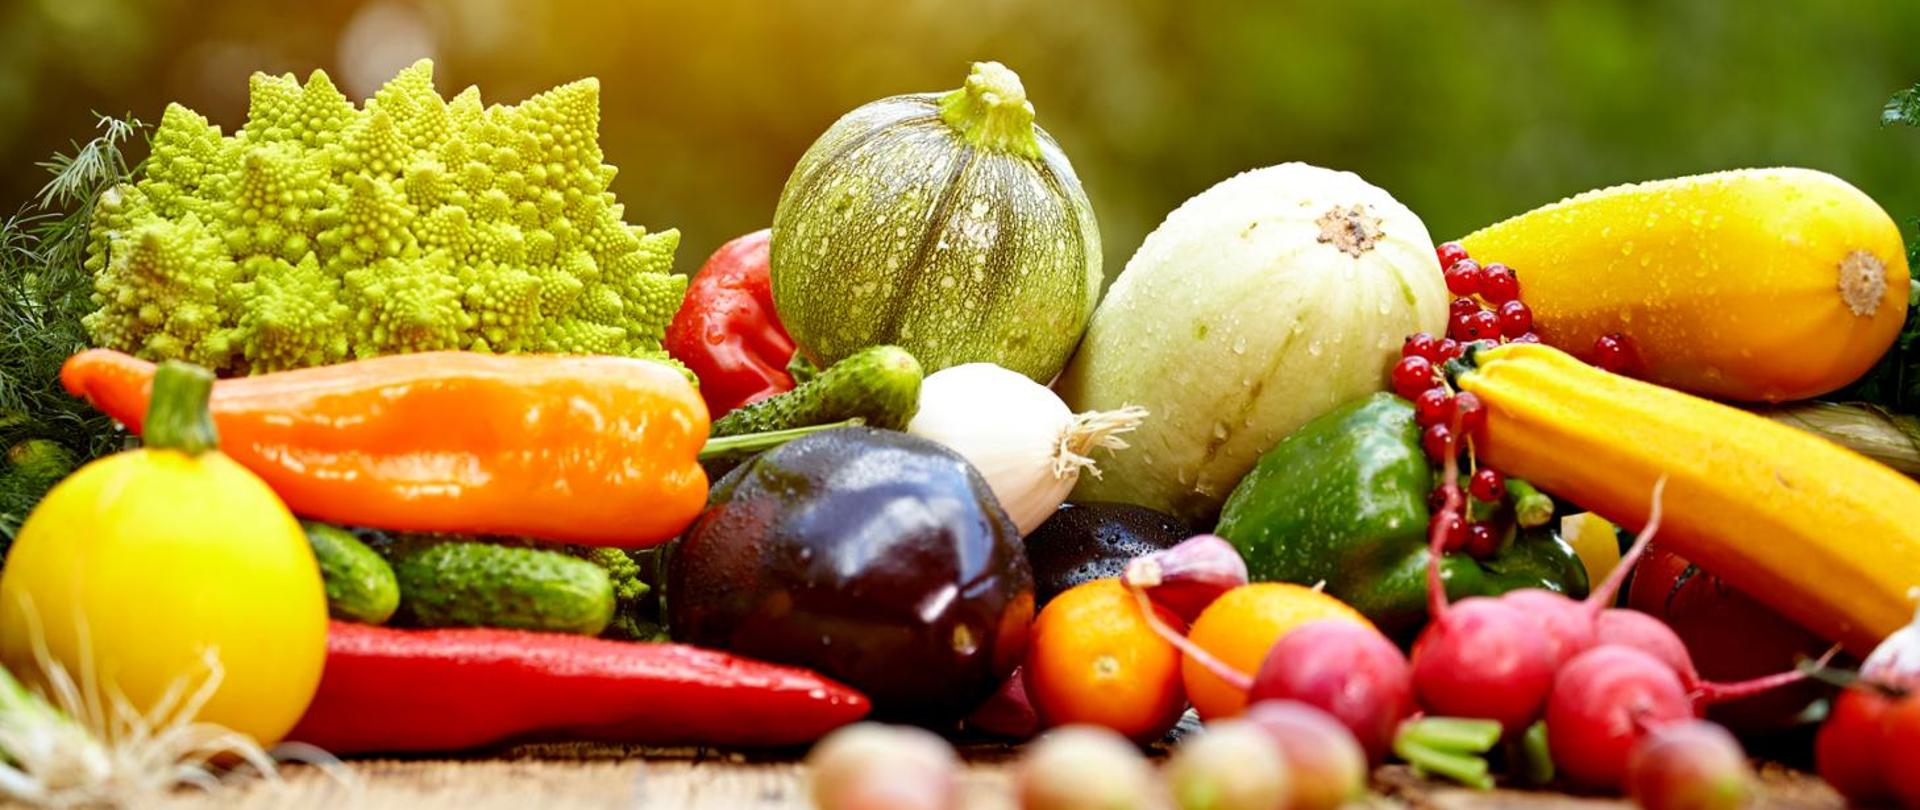 Na zdjęciu widoczne są świeże warzywa m.in. papryka, rzodkiewka, ogórki, dynia, kabaczek, cukinia, bakłażan. 